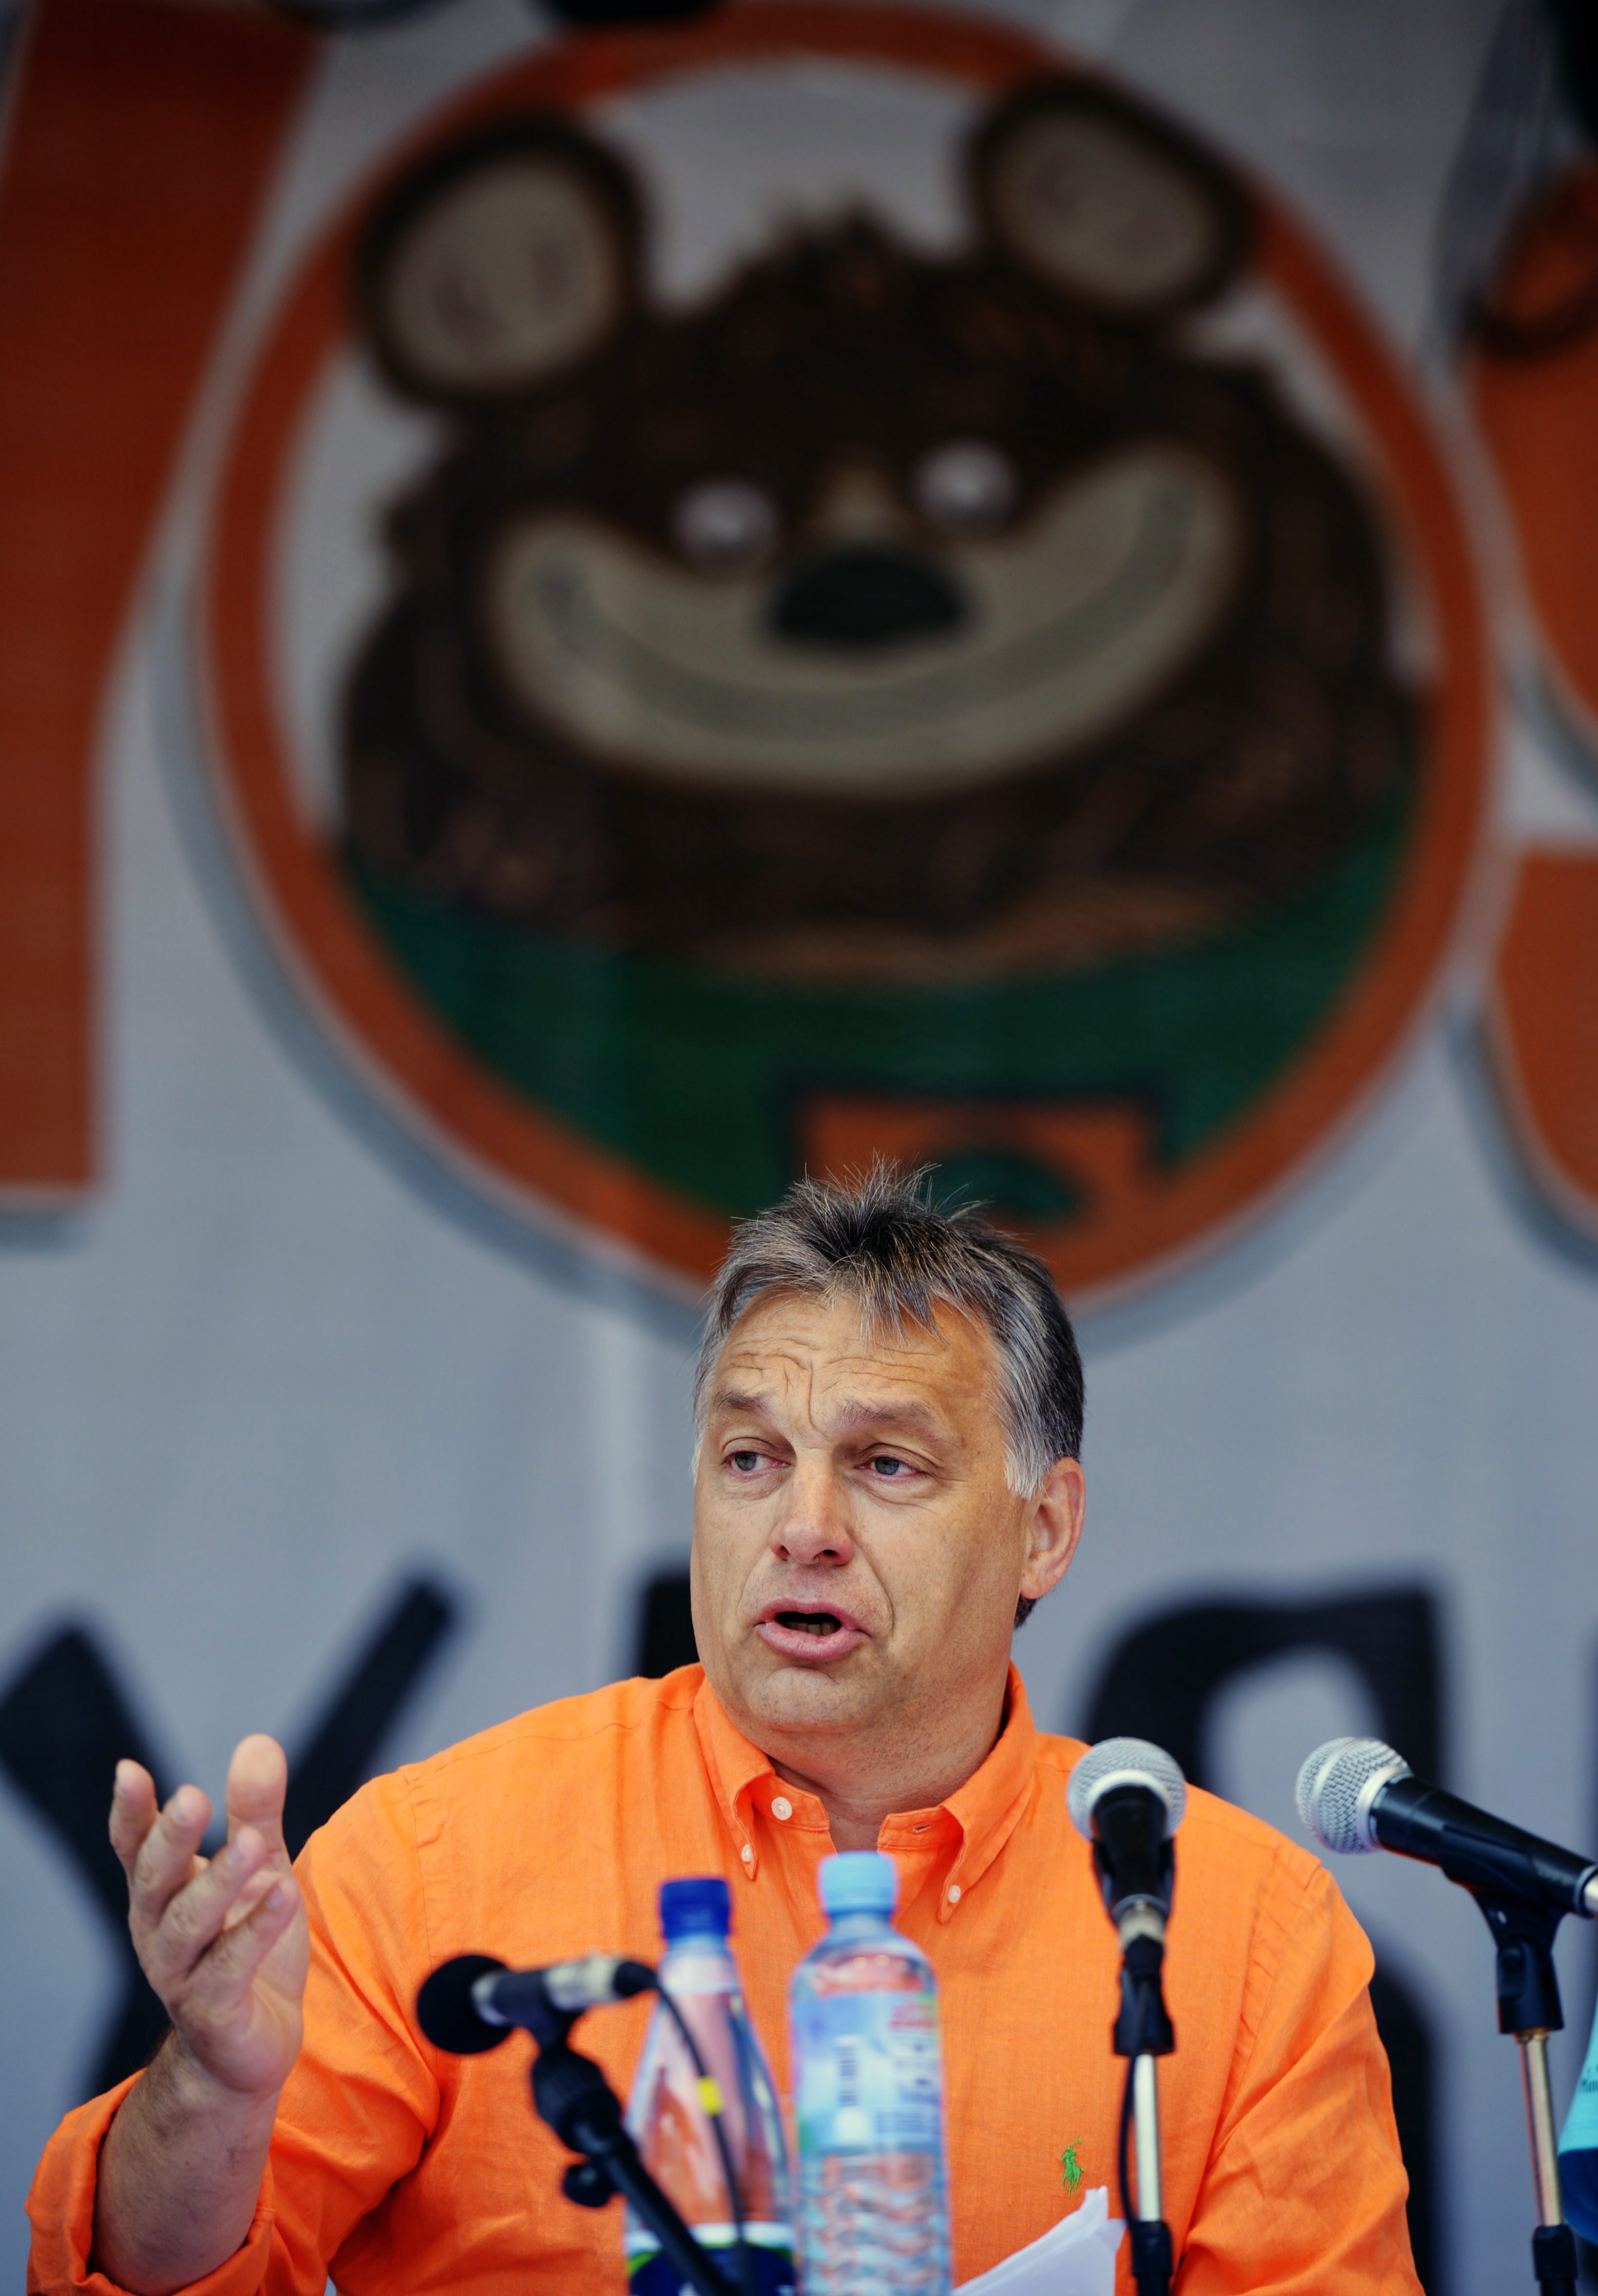 Orbán Viktor Tusnádfürdőn